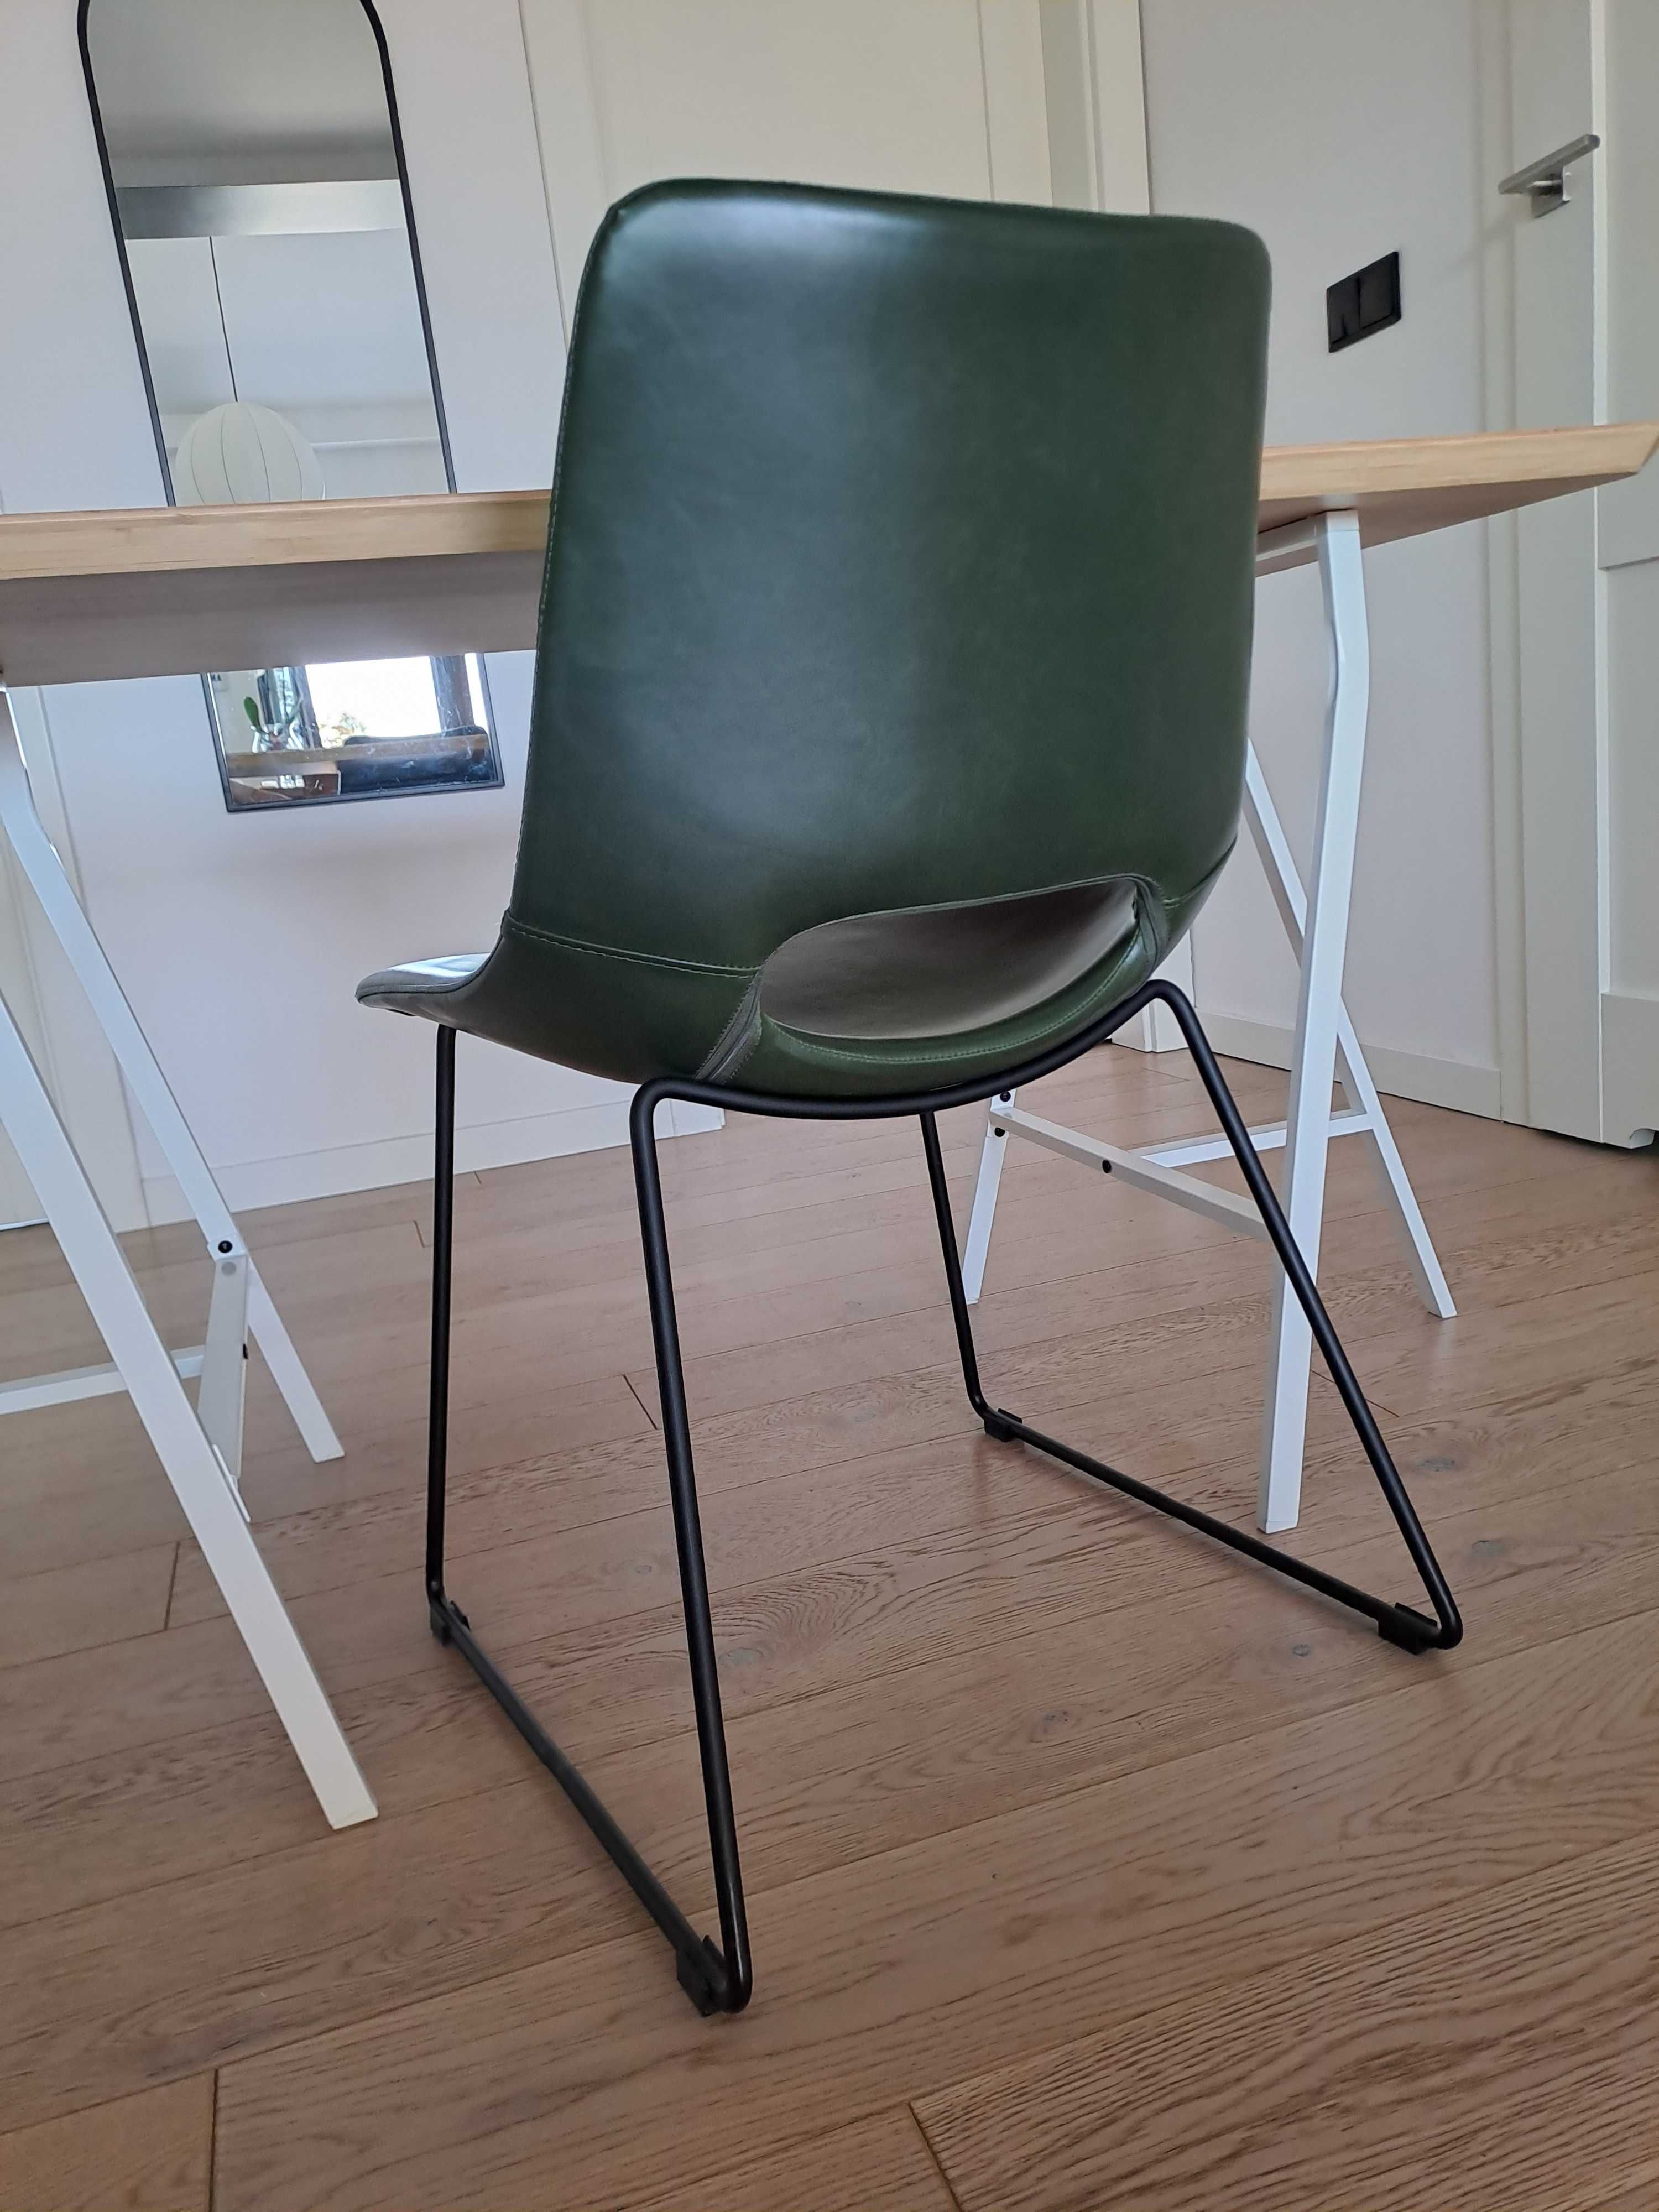 Skórzane krzesło nowa niższa cena